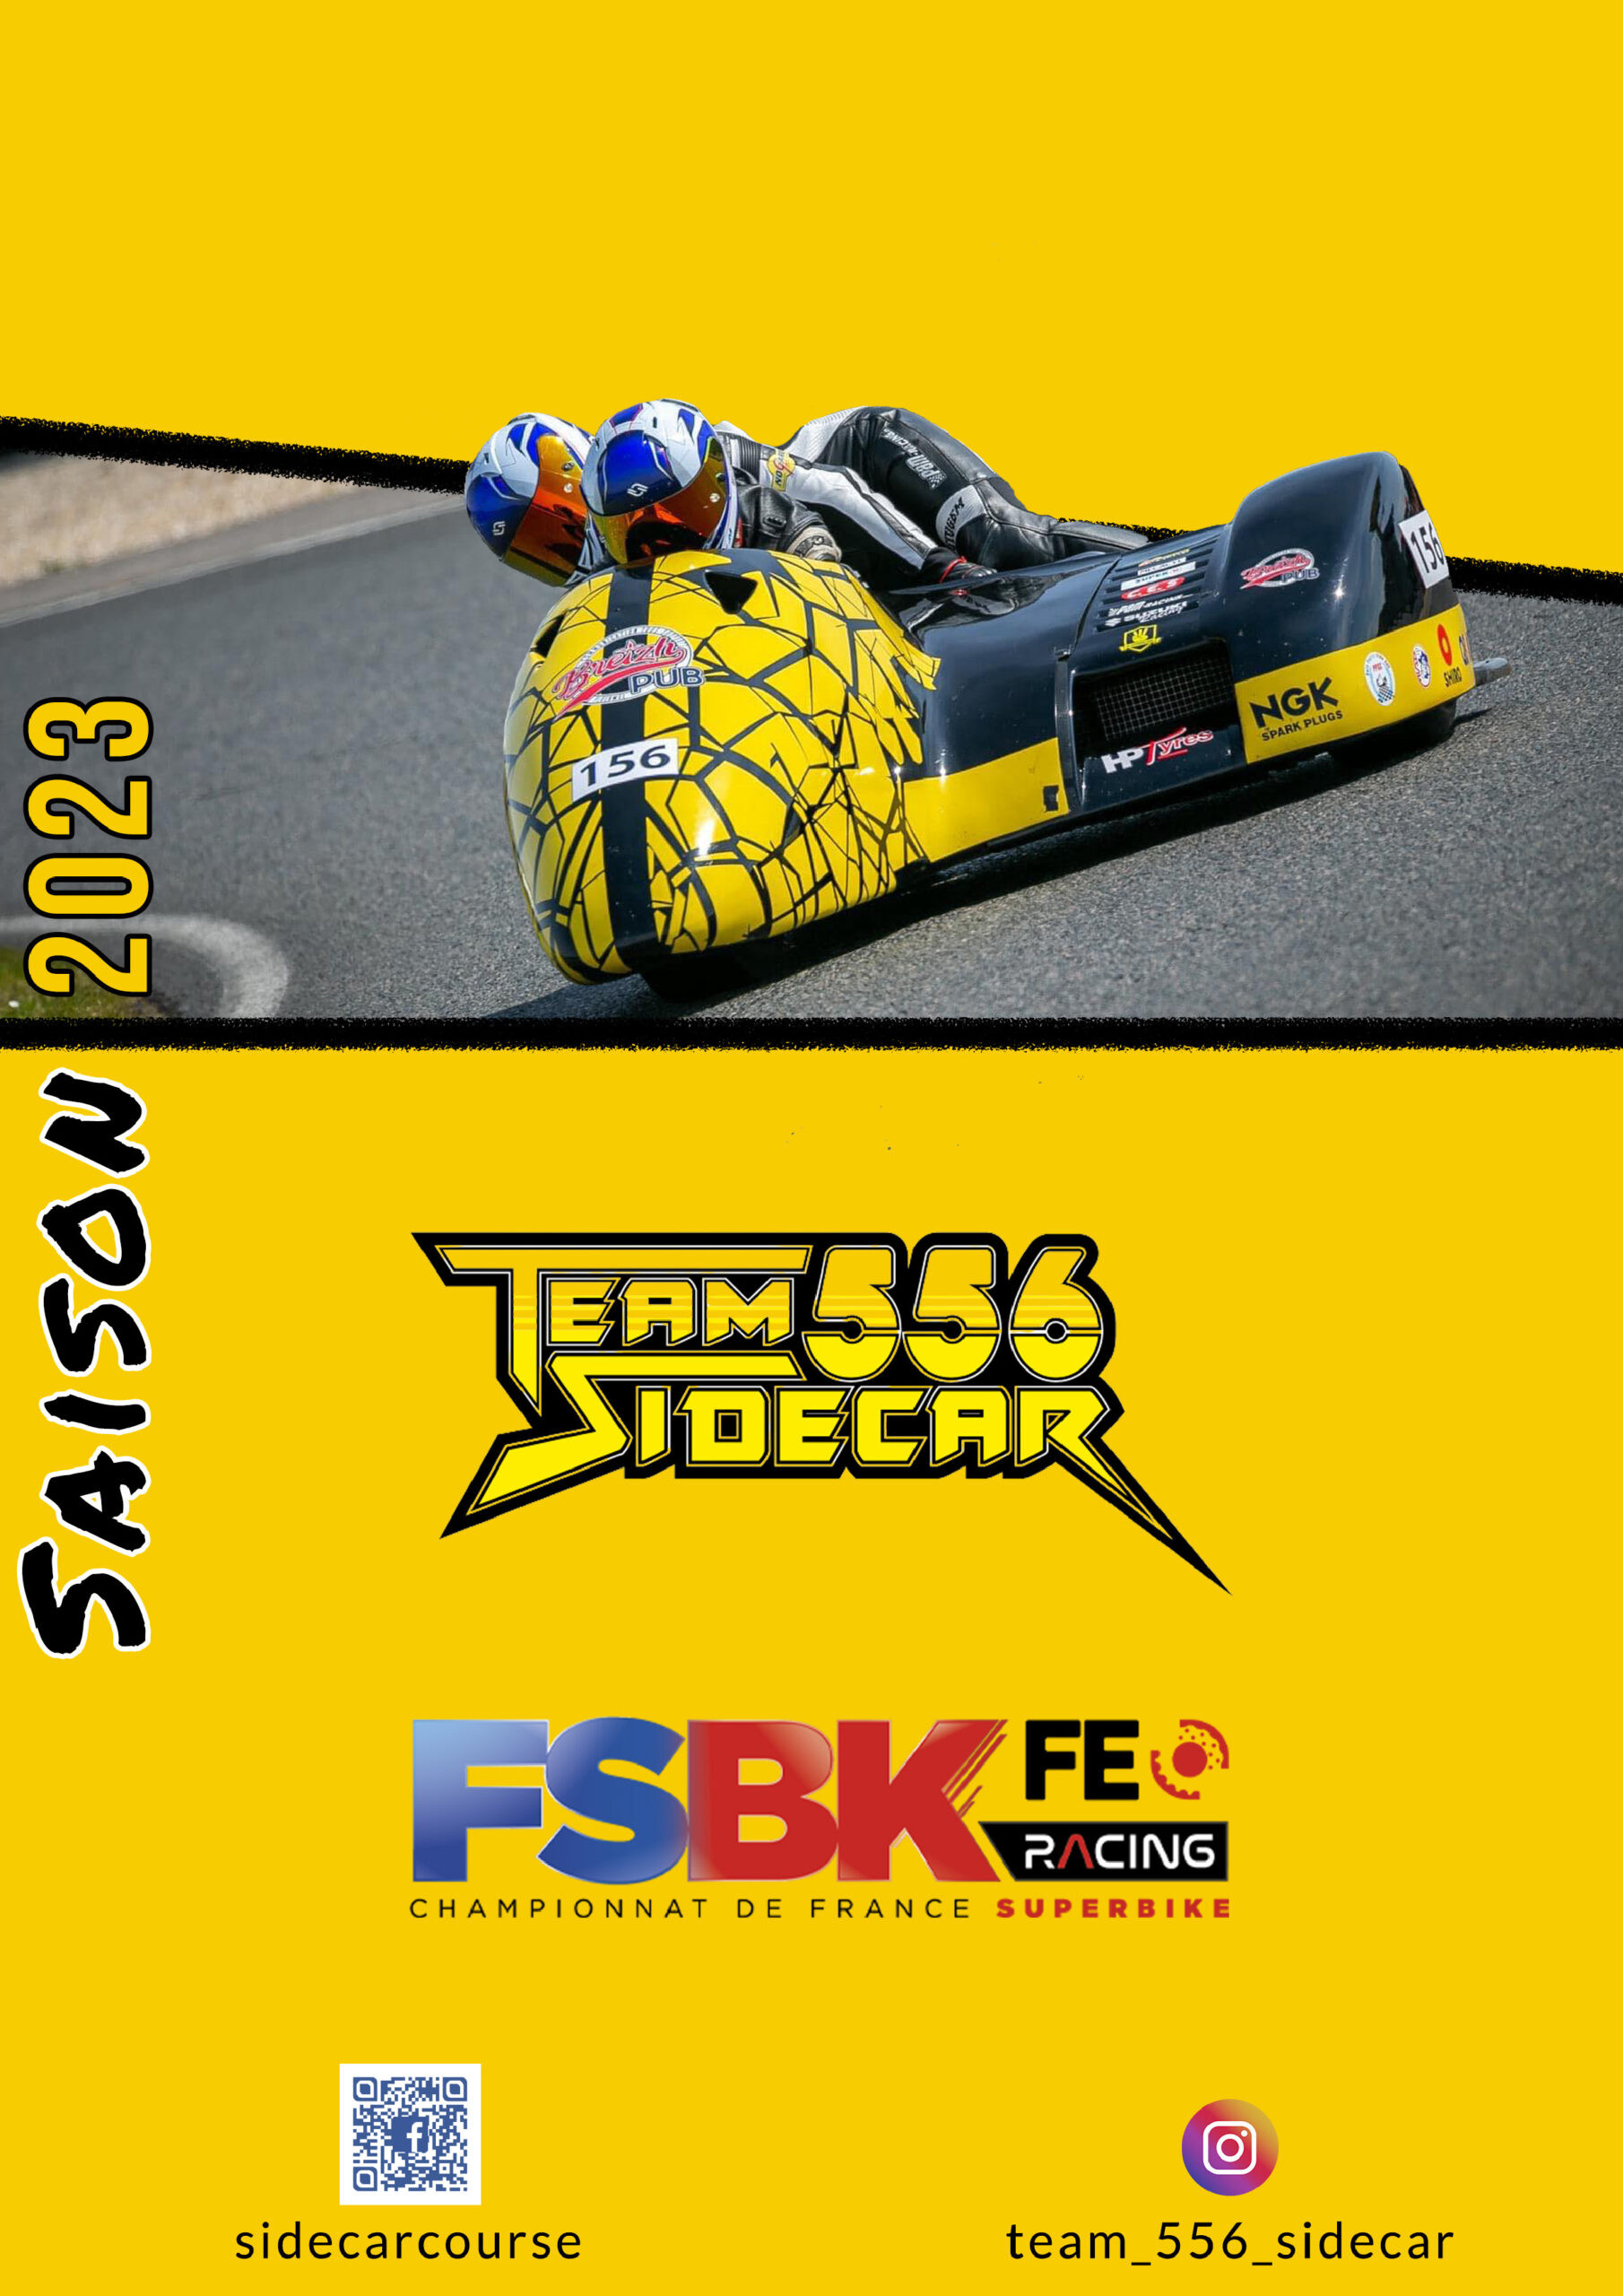 Team 556 sidecar